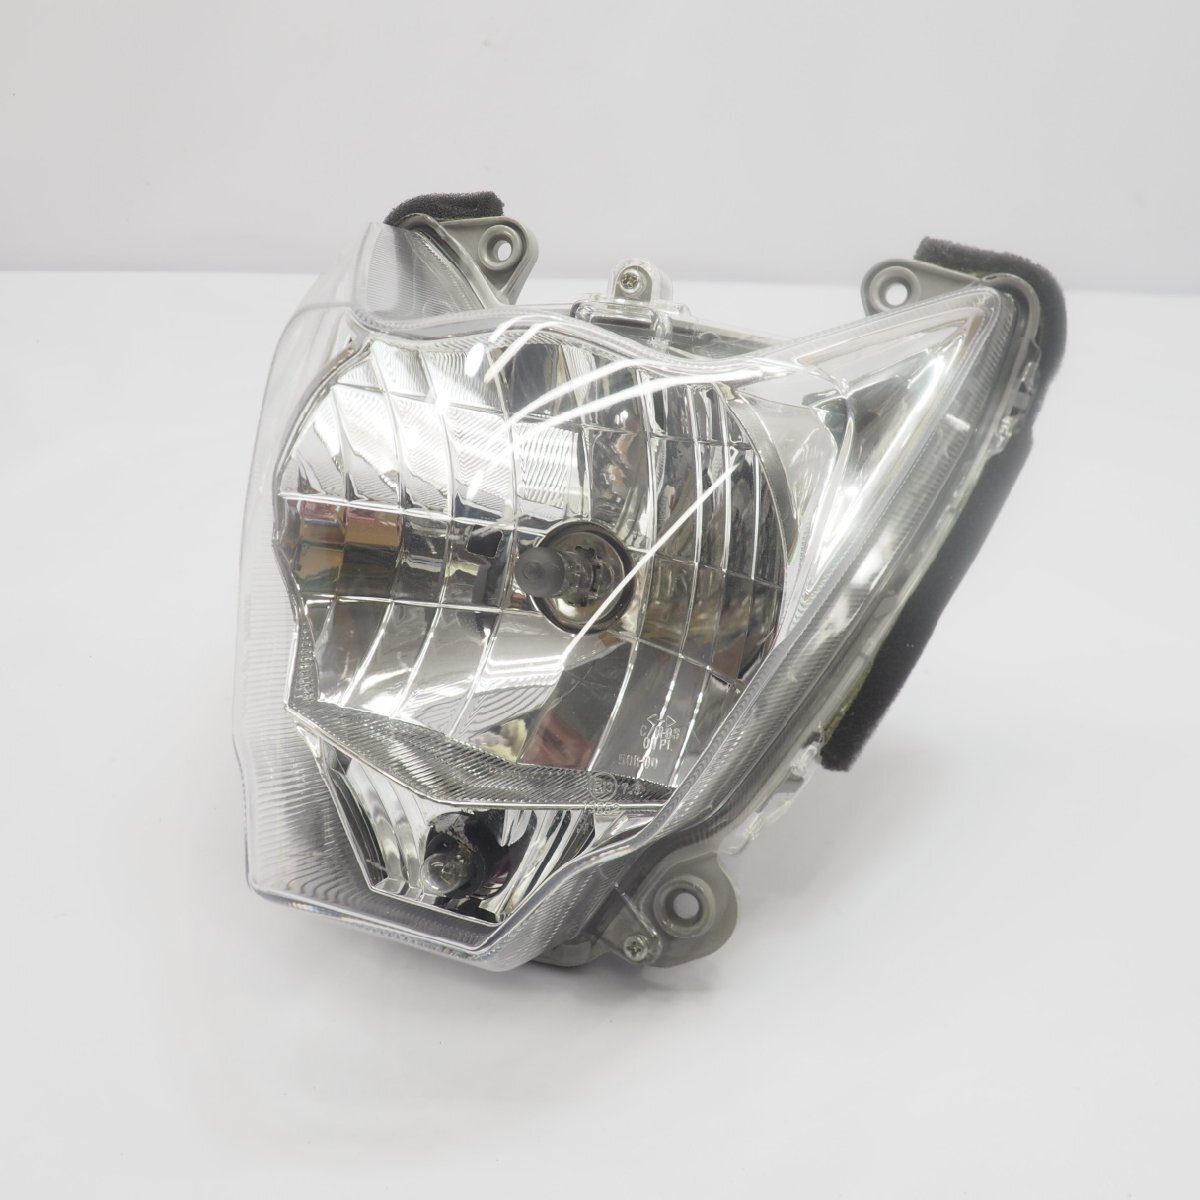 一応割れ無しZ125プロ ヘッドライト 純正ヘッドランプ BR125H Z125PRO headlight headlampの画像1